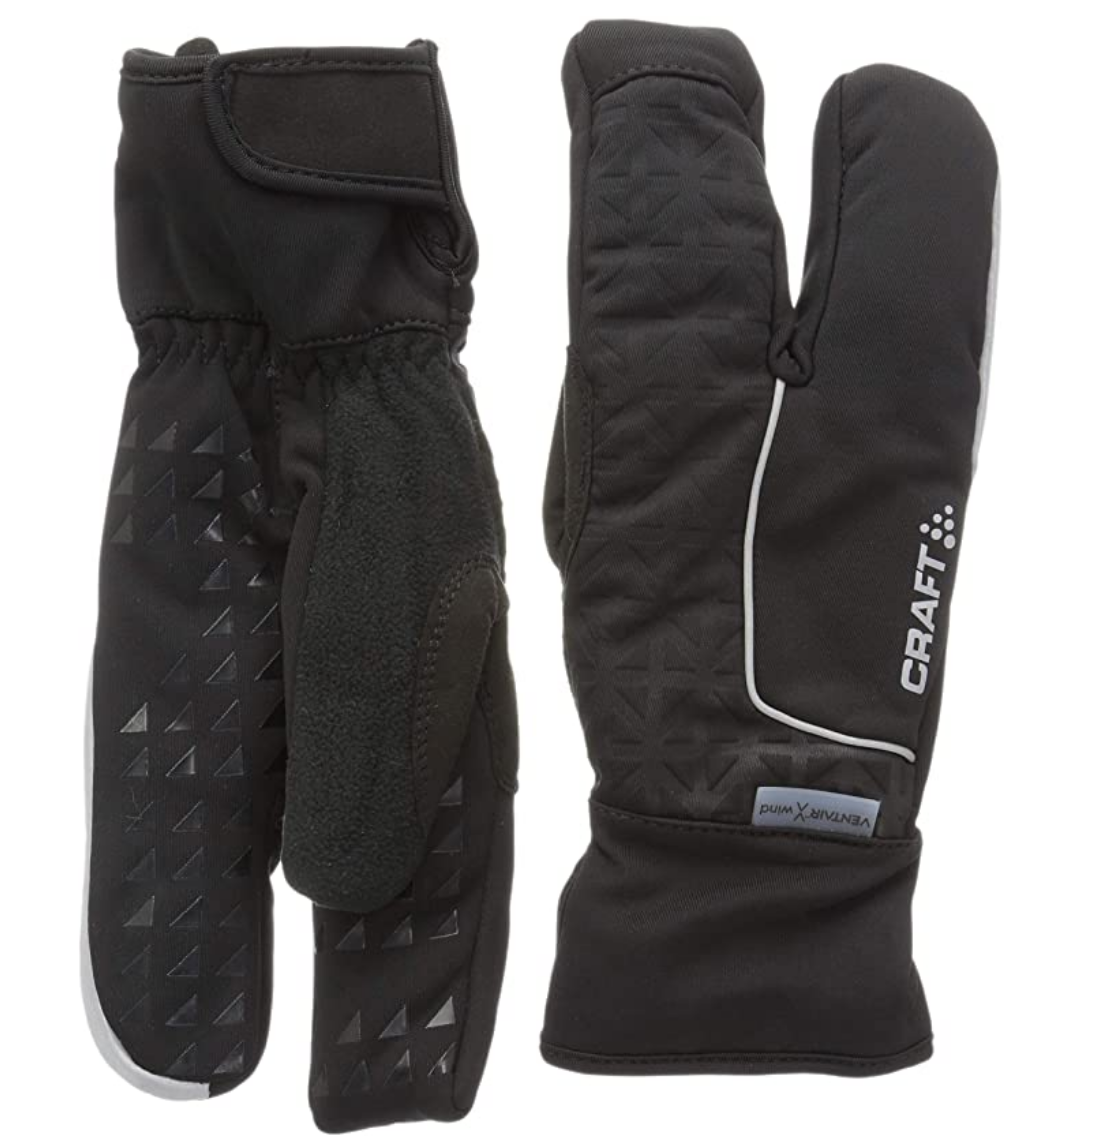 waterproof gloves for bike